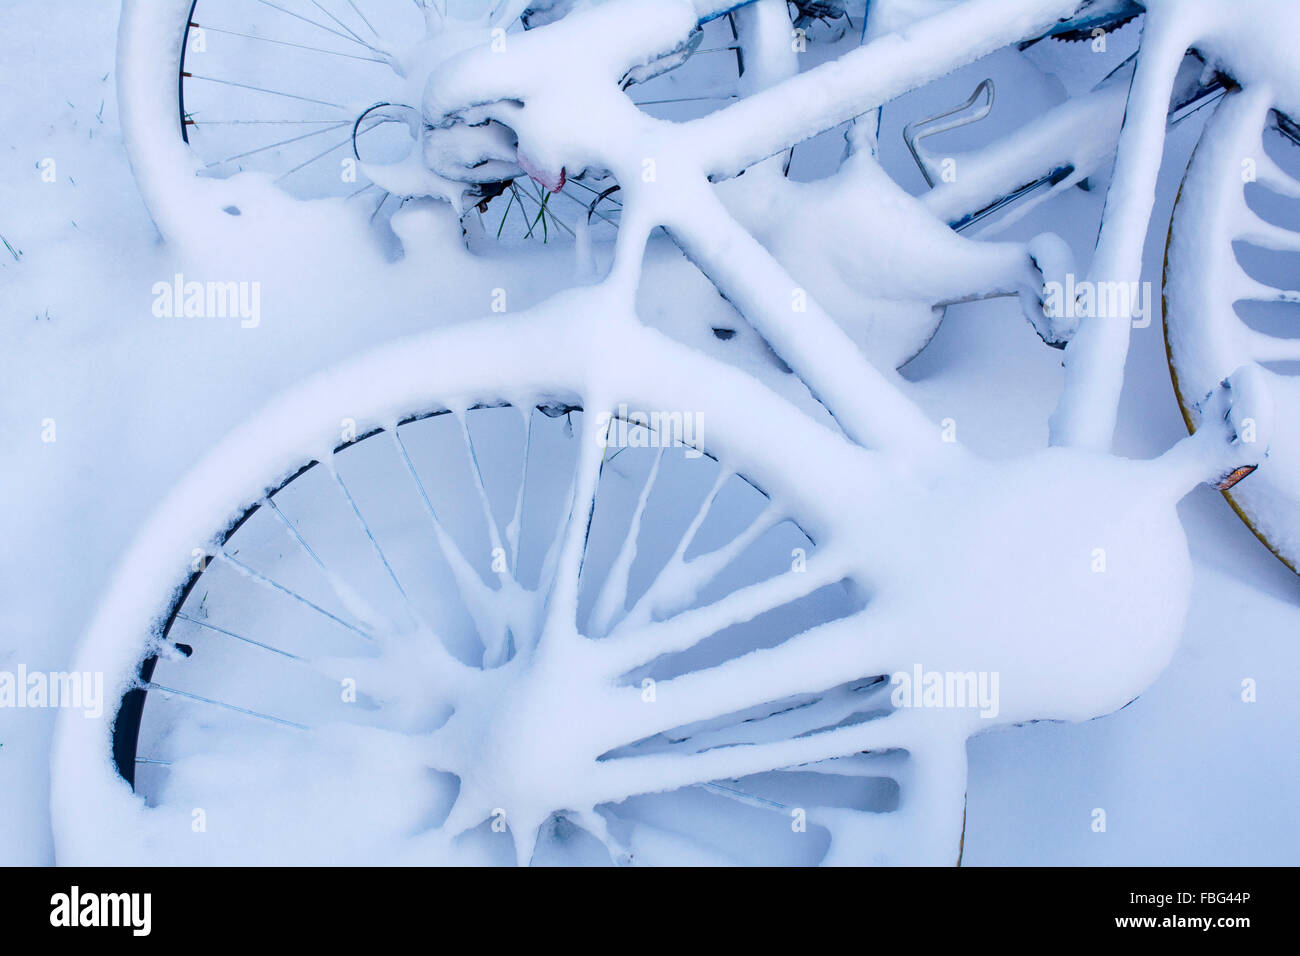 Ein Fahrrad ruht im Schnee nach einem Winter Schneesturm Stockfoto